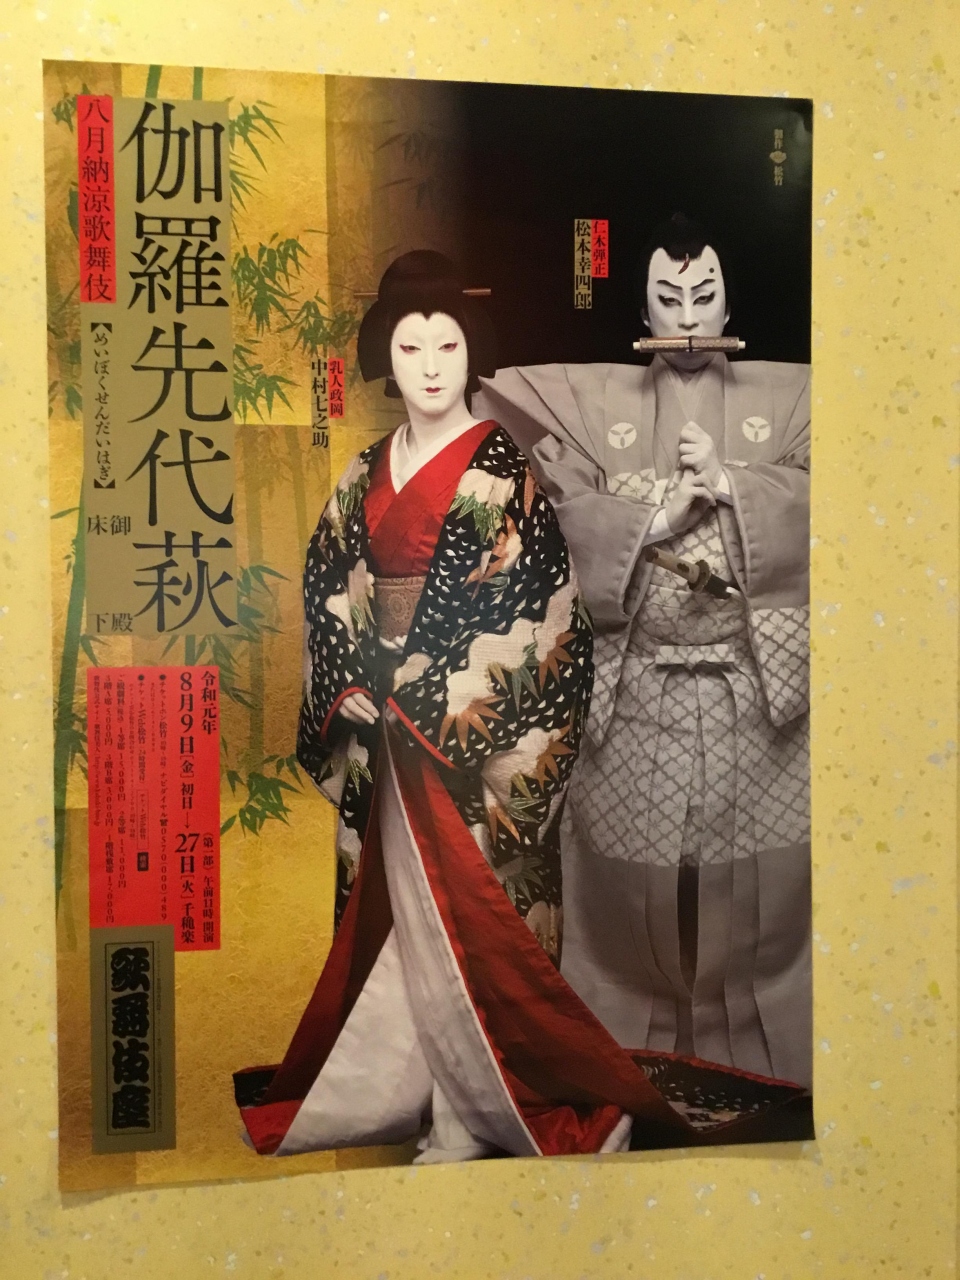 八月納涼歌舞伎の思い出』銀座・有楽町・日比谷(東京)の旅行記・ブログ 